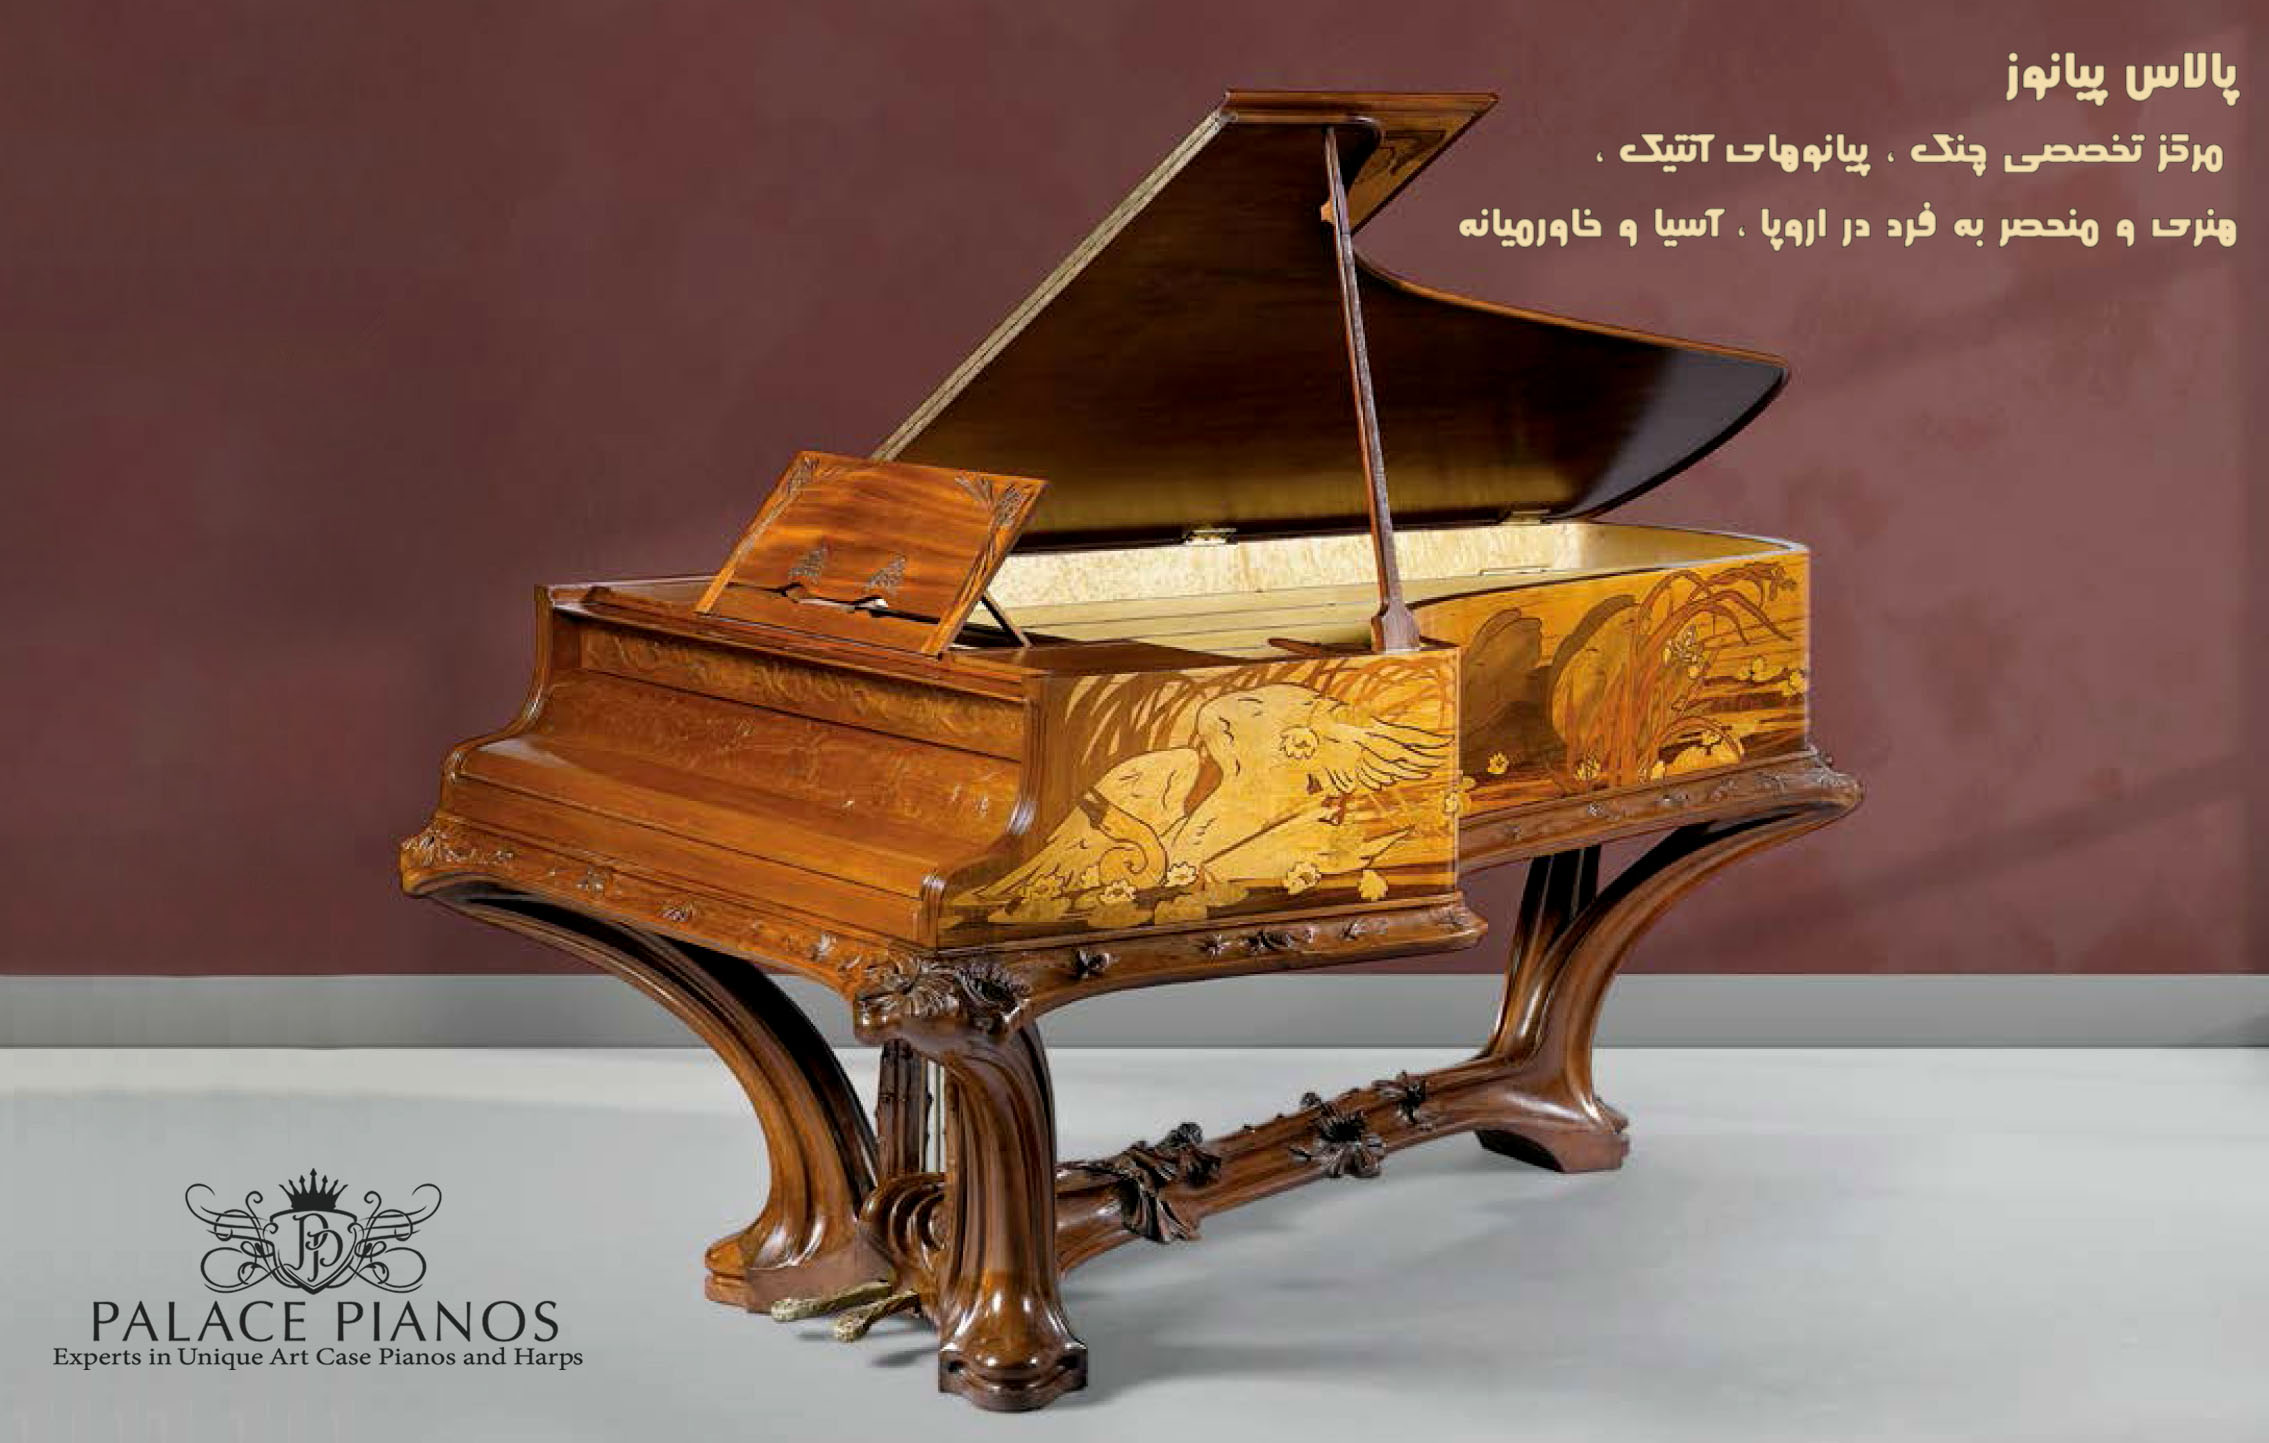 پالاس پیانوز ، مرکز تخصصی چنگ ، پیانوهای آنتیک ، هنری و منحصر به فرد در اروپا ، آسیا و خاورمیانه . Experts in Unique Art Case Pianos and Harps .